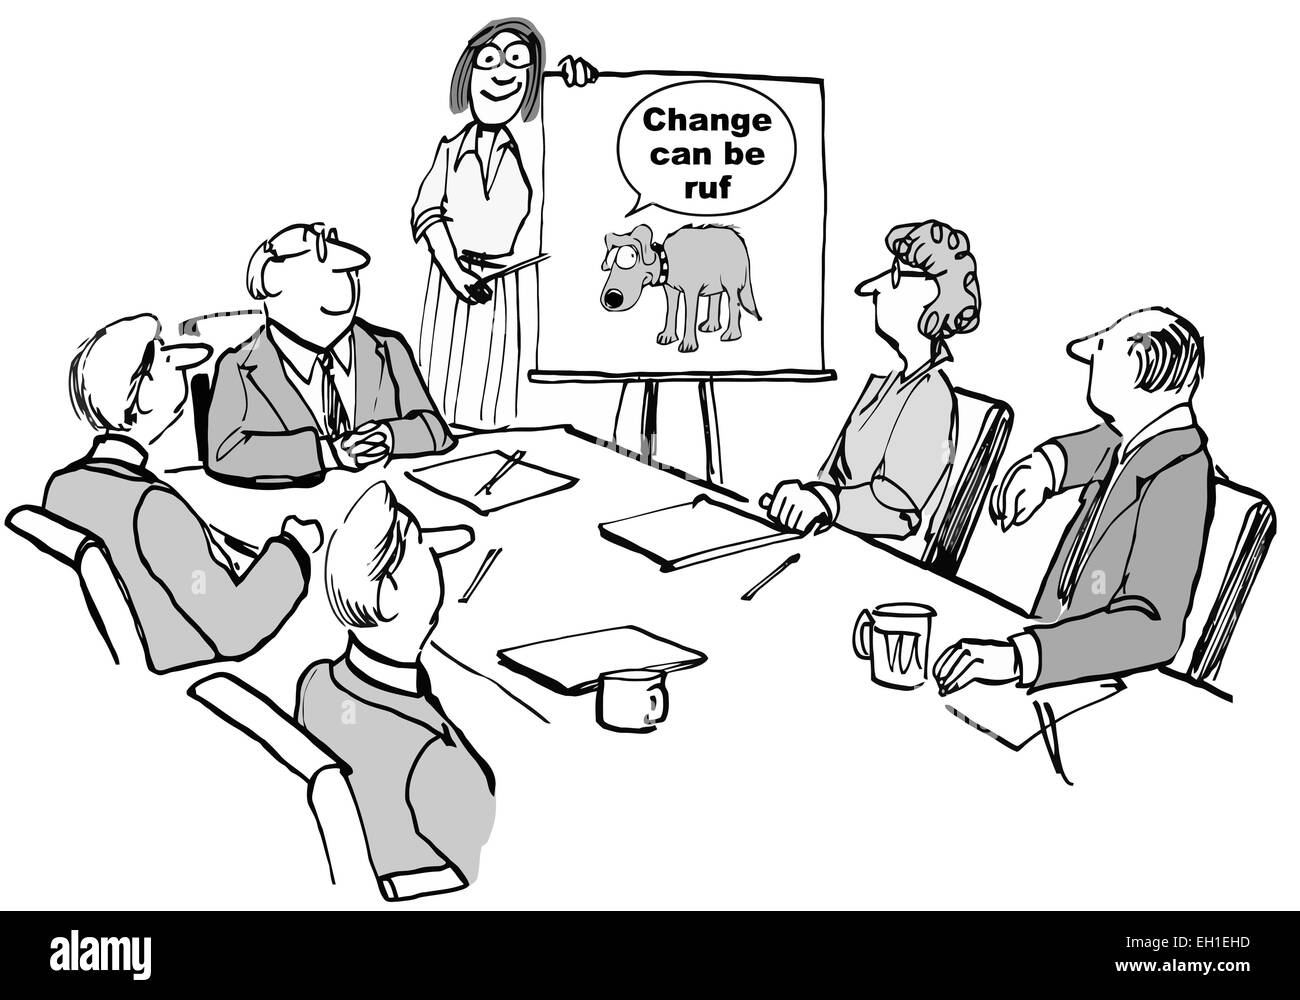 Karikatur von Änderung Seminar Business-meeting, Geschäftsfrau Punkte Chart: Veränderung kann sein "Ruf" Stock Vektor